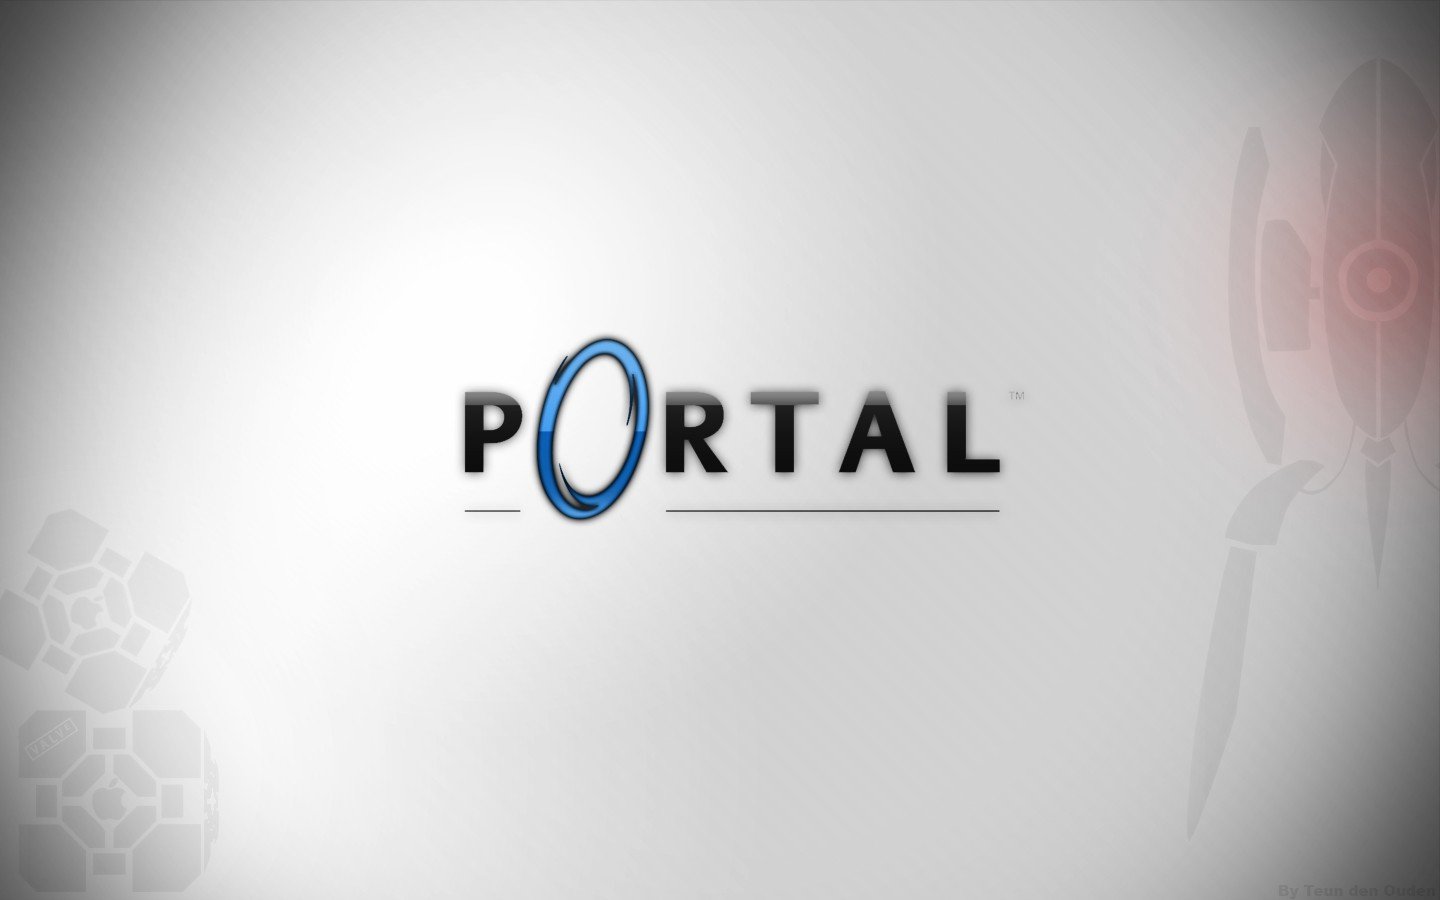 Portal and portal 2 for mac фото 81